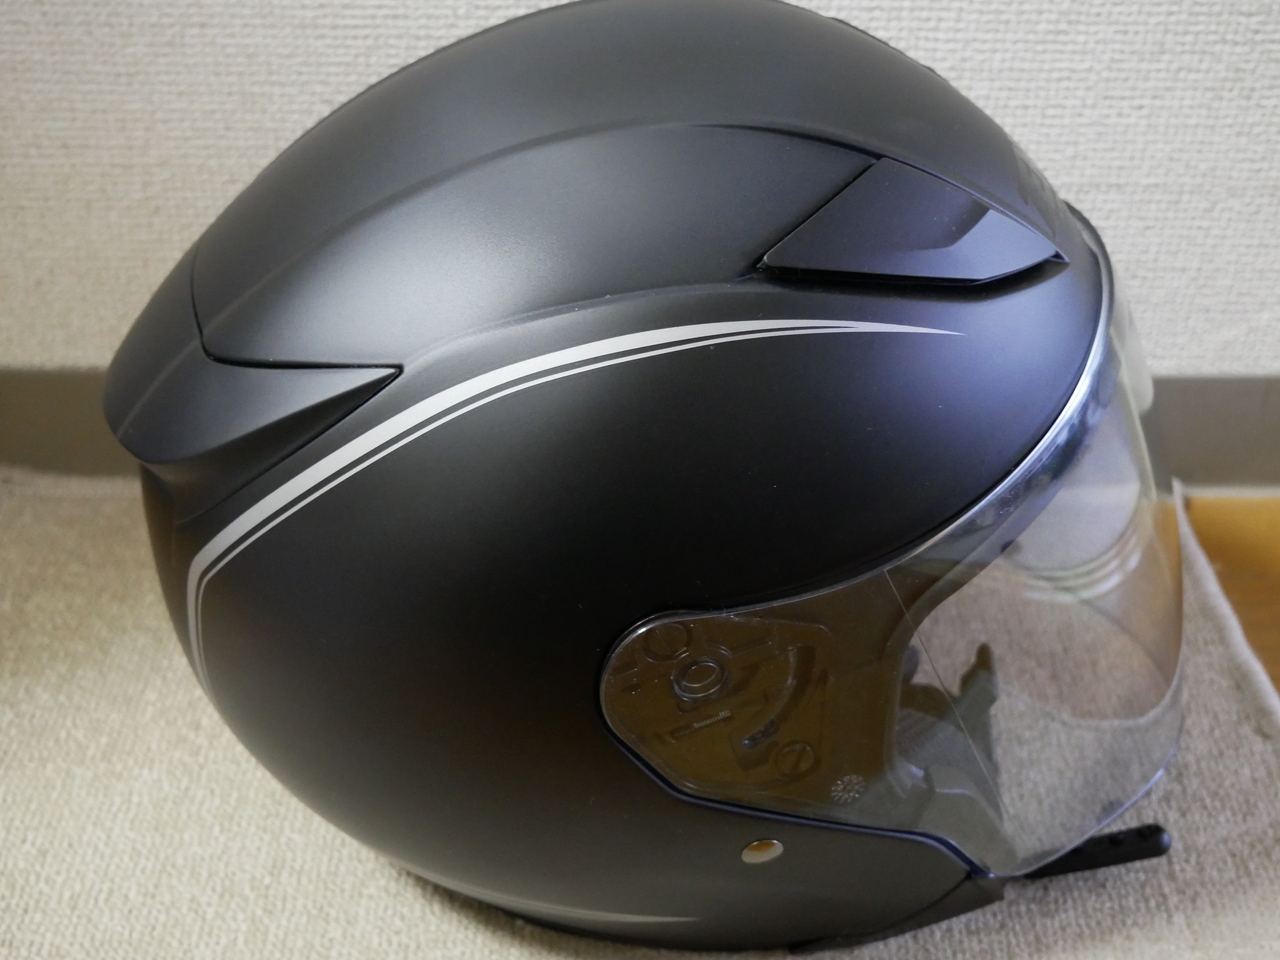 1386円 予約販売品 ZR6550 ヘルメットハードシェルＳ マットブラック 色